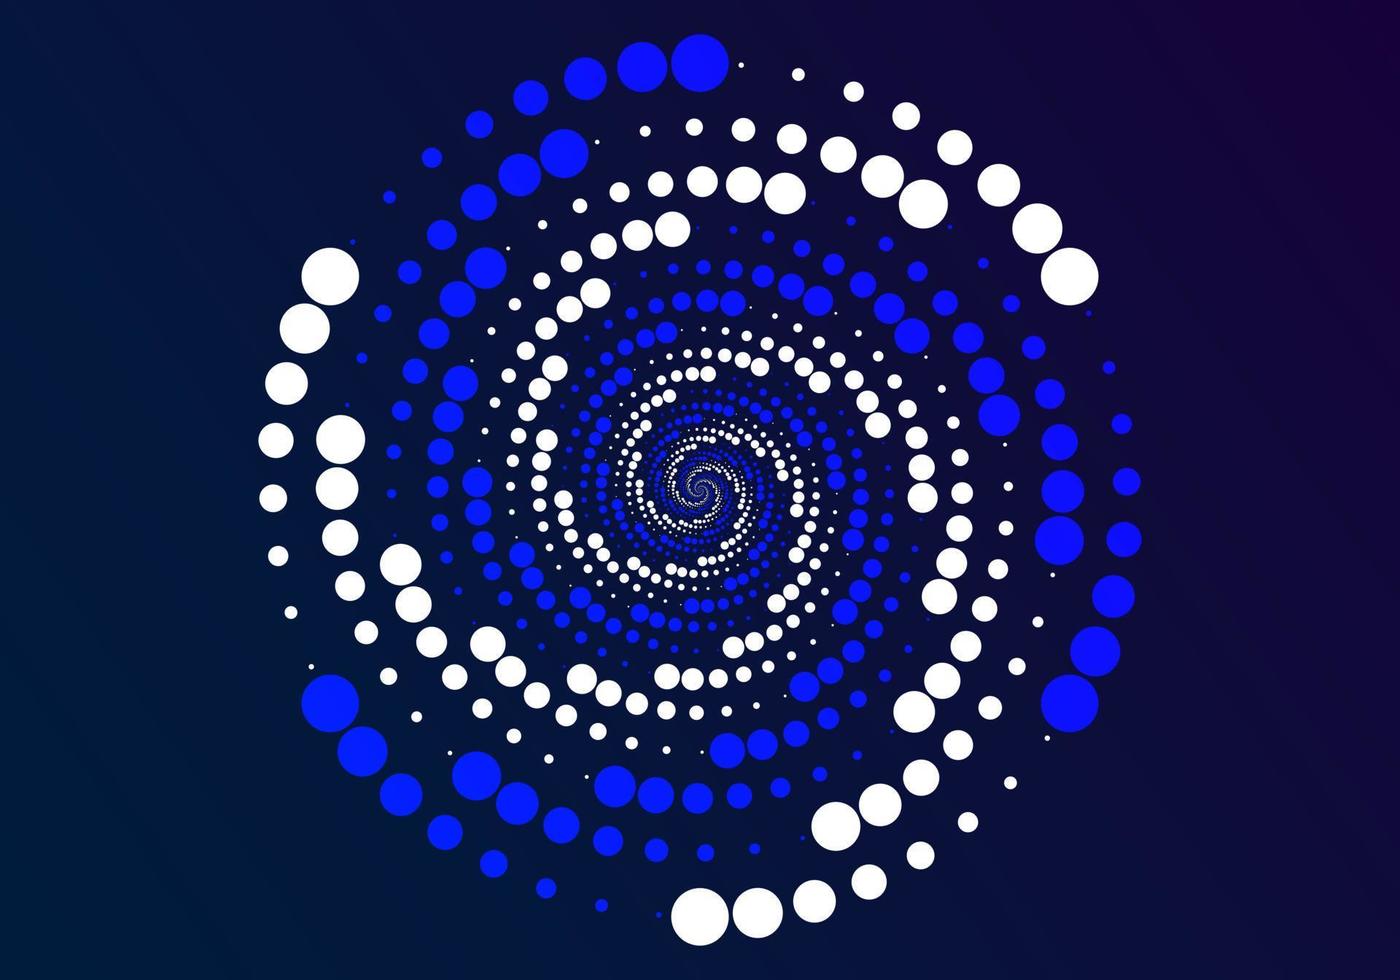 círculo abstracto, utilizando puntos dispuestos en círculos de varios tamaños, girados repetidamente, principalmente en azul y blanco. vector